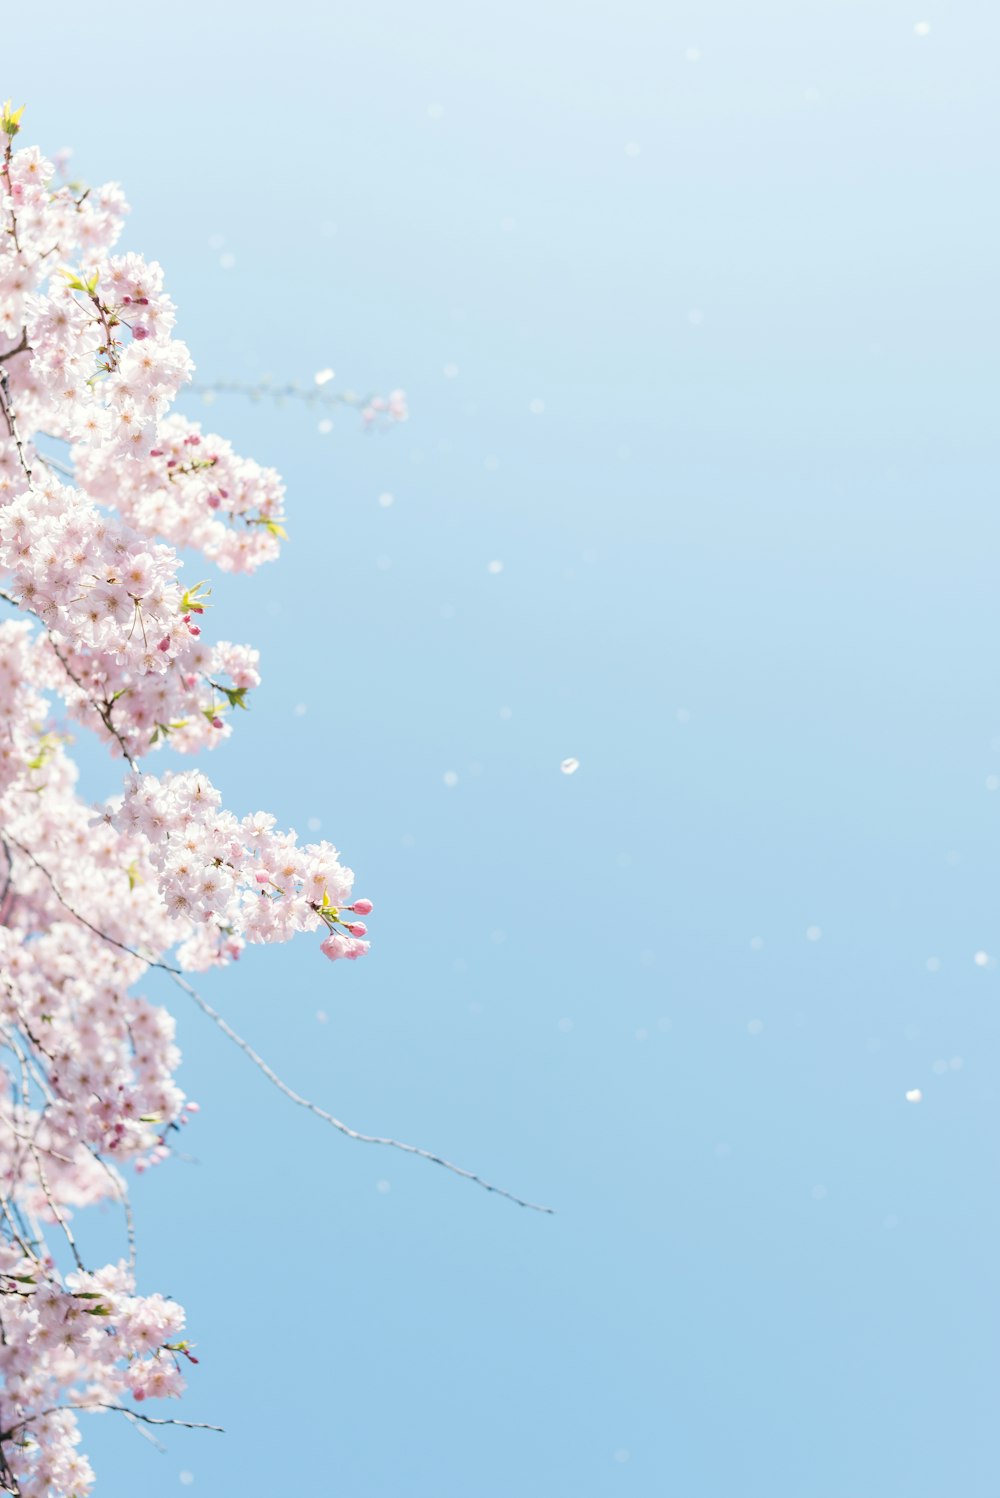 푸른 하늘 아래 벚꽃